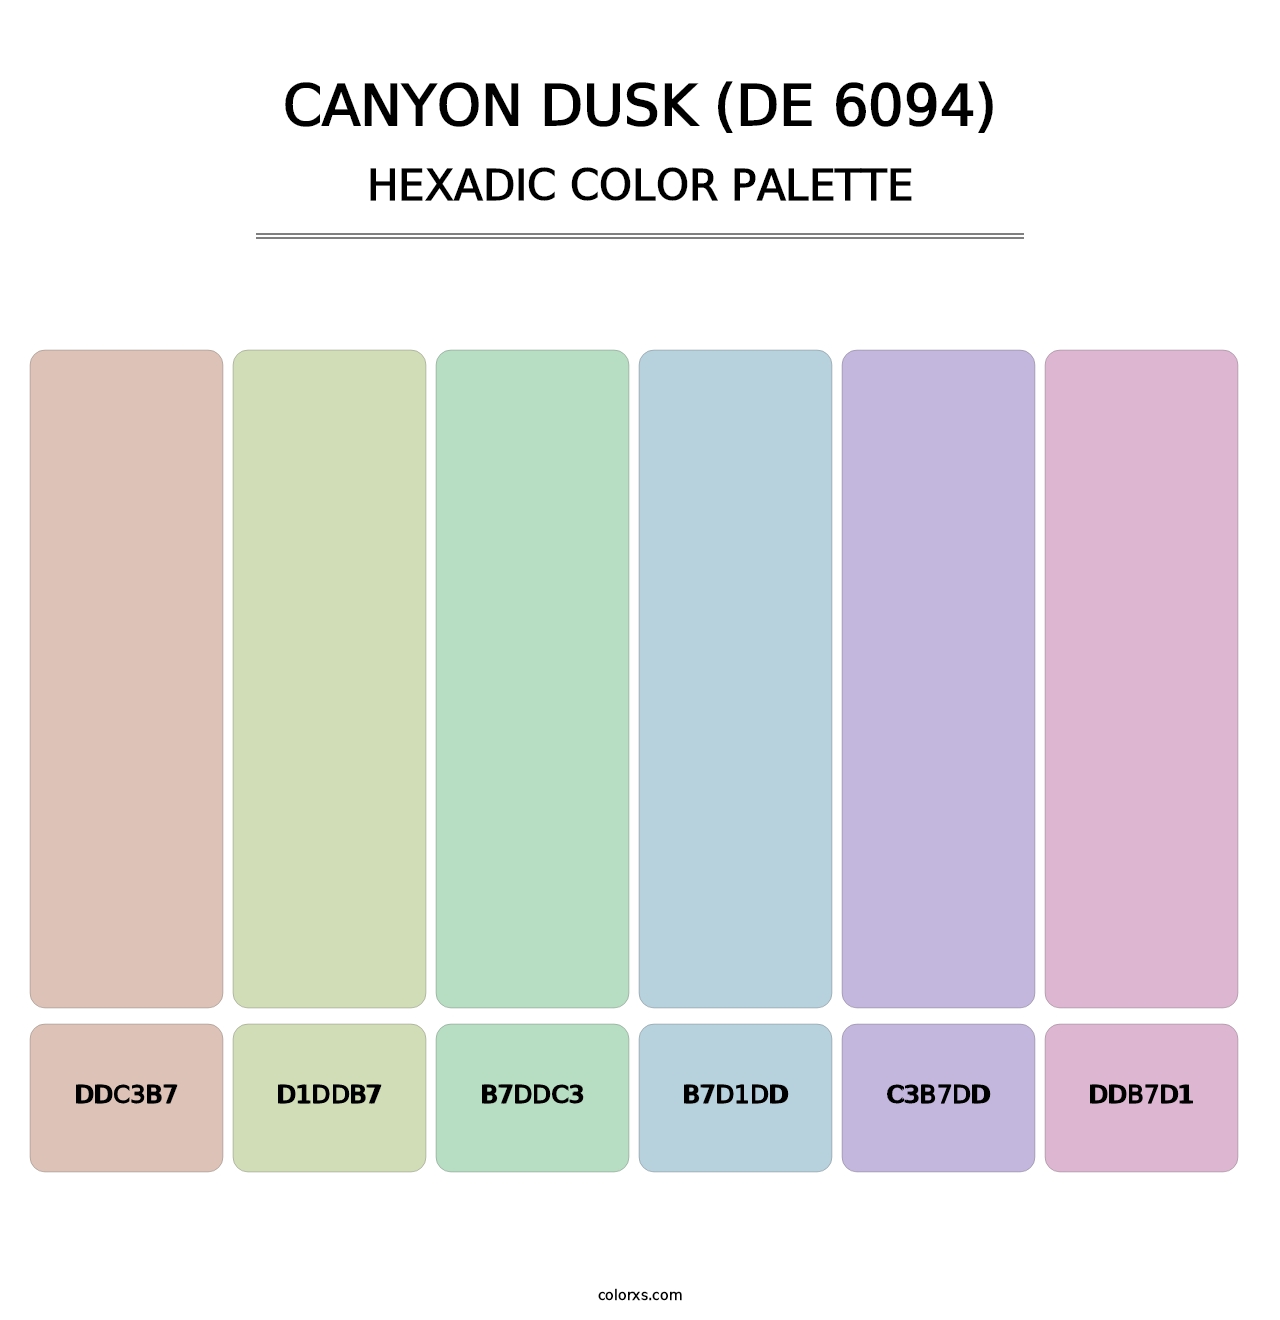 Canyon Dusk (DE 6094) - Hexadic Color Palette